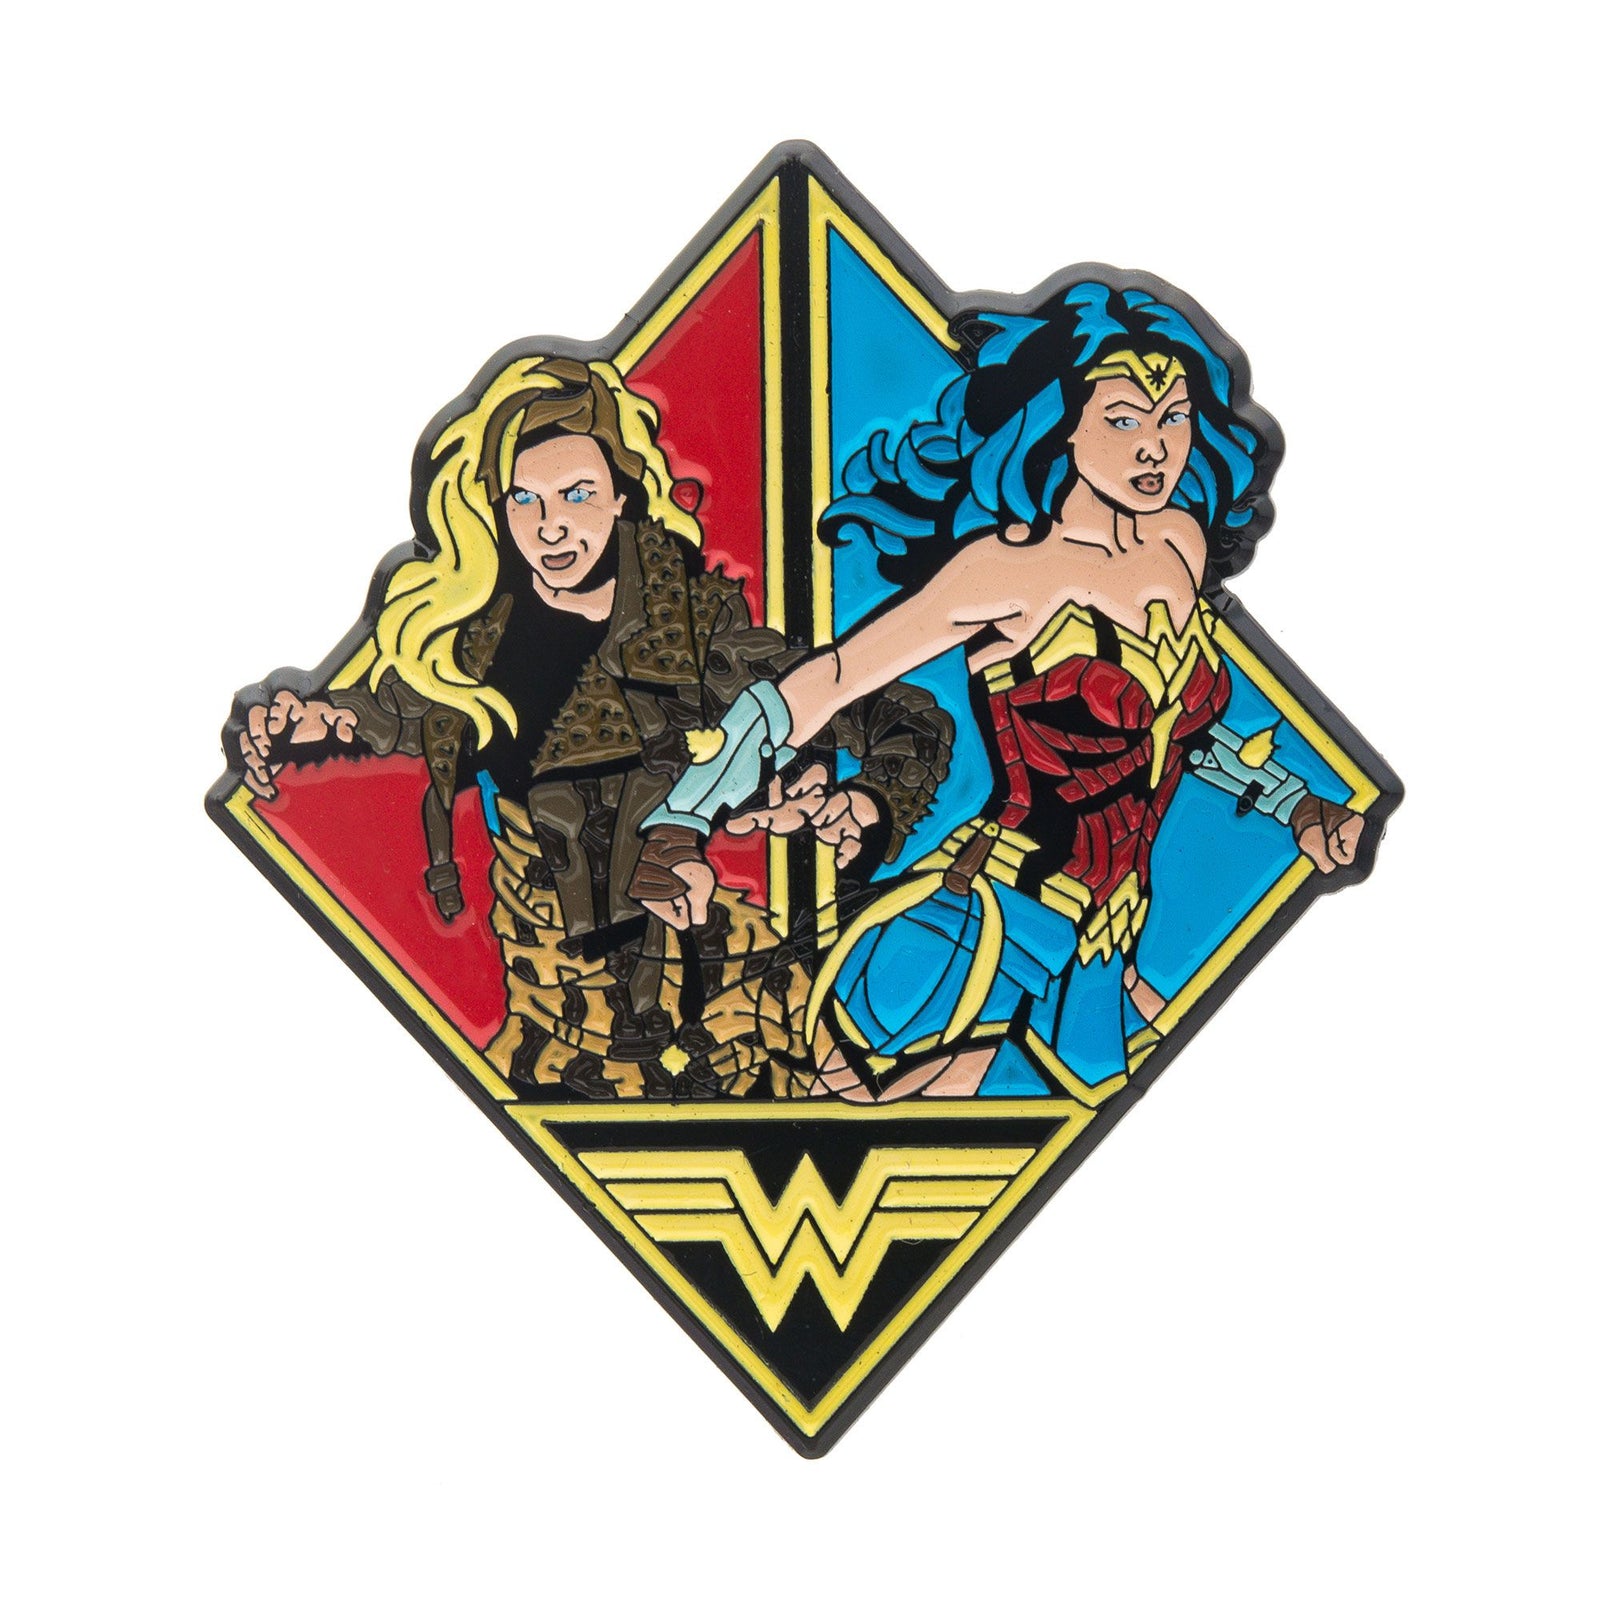 DC COMICS Dc Comics Wonder Woman Cheetah Lapel Pin -Rebel Bod-RebelBod